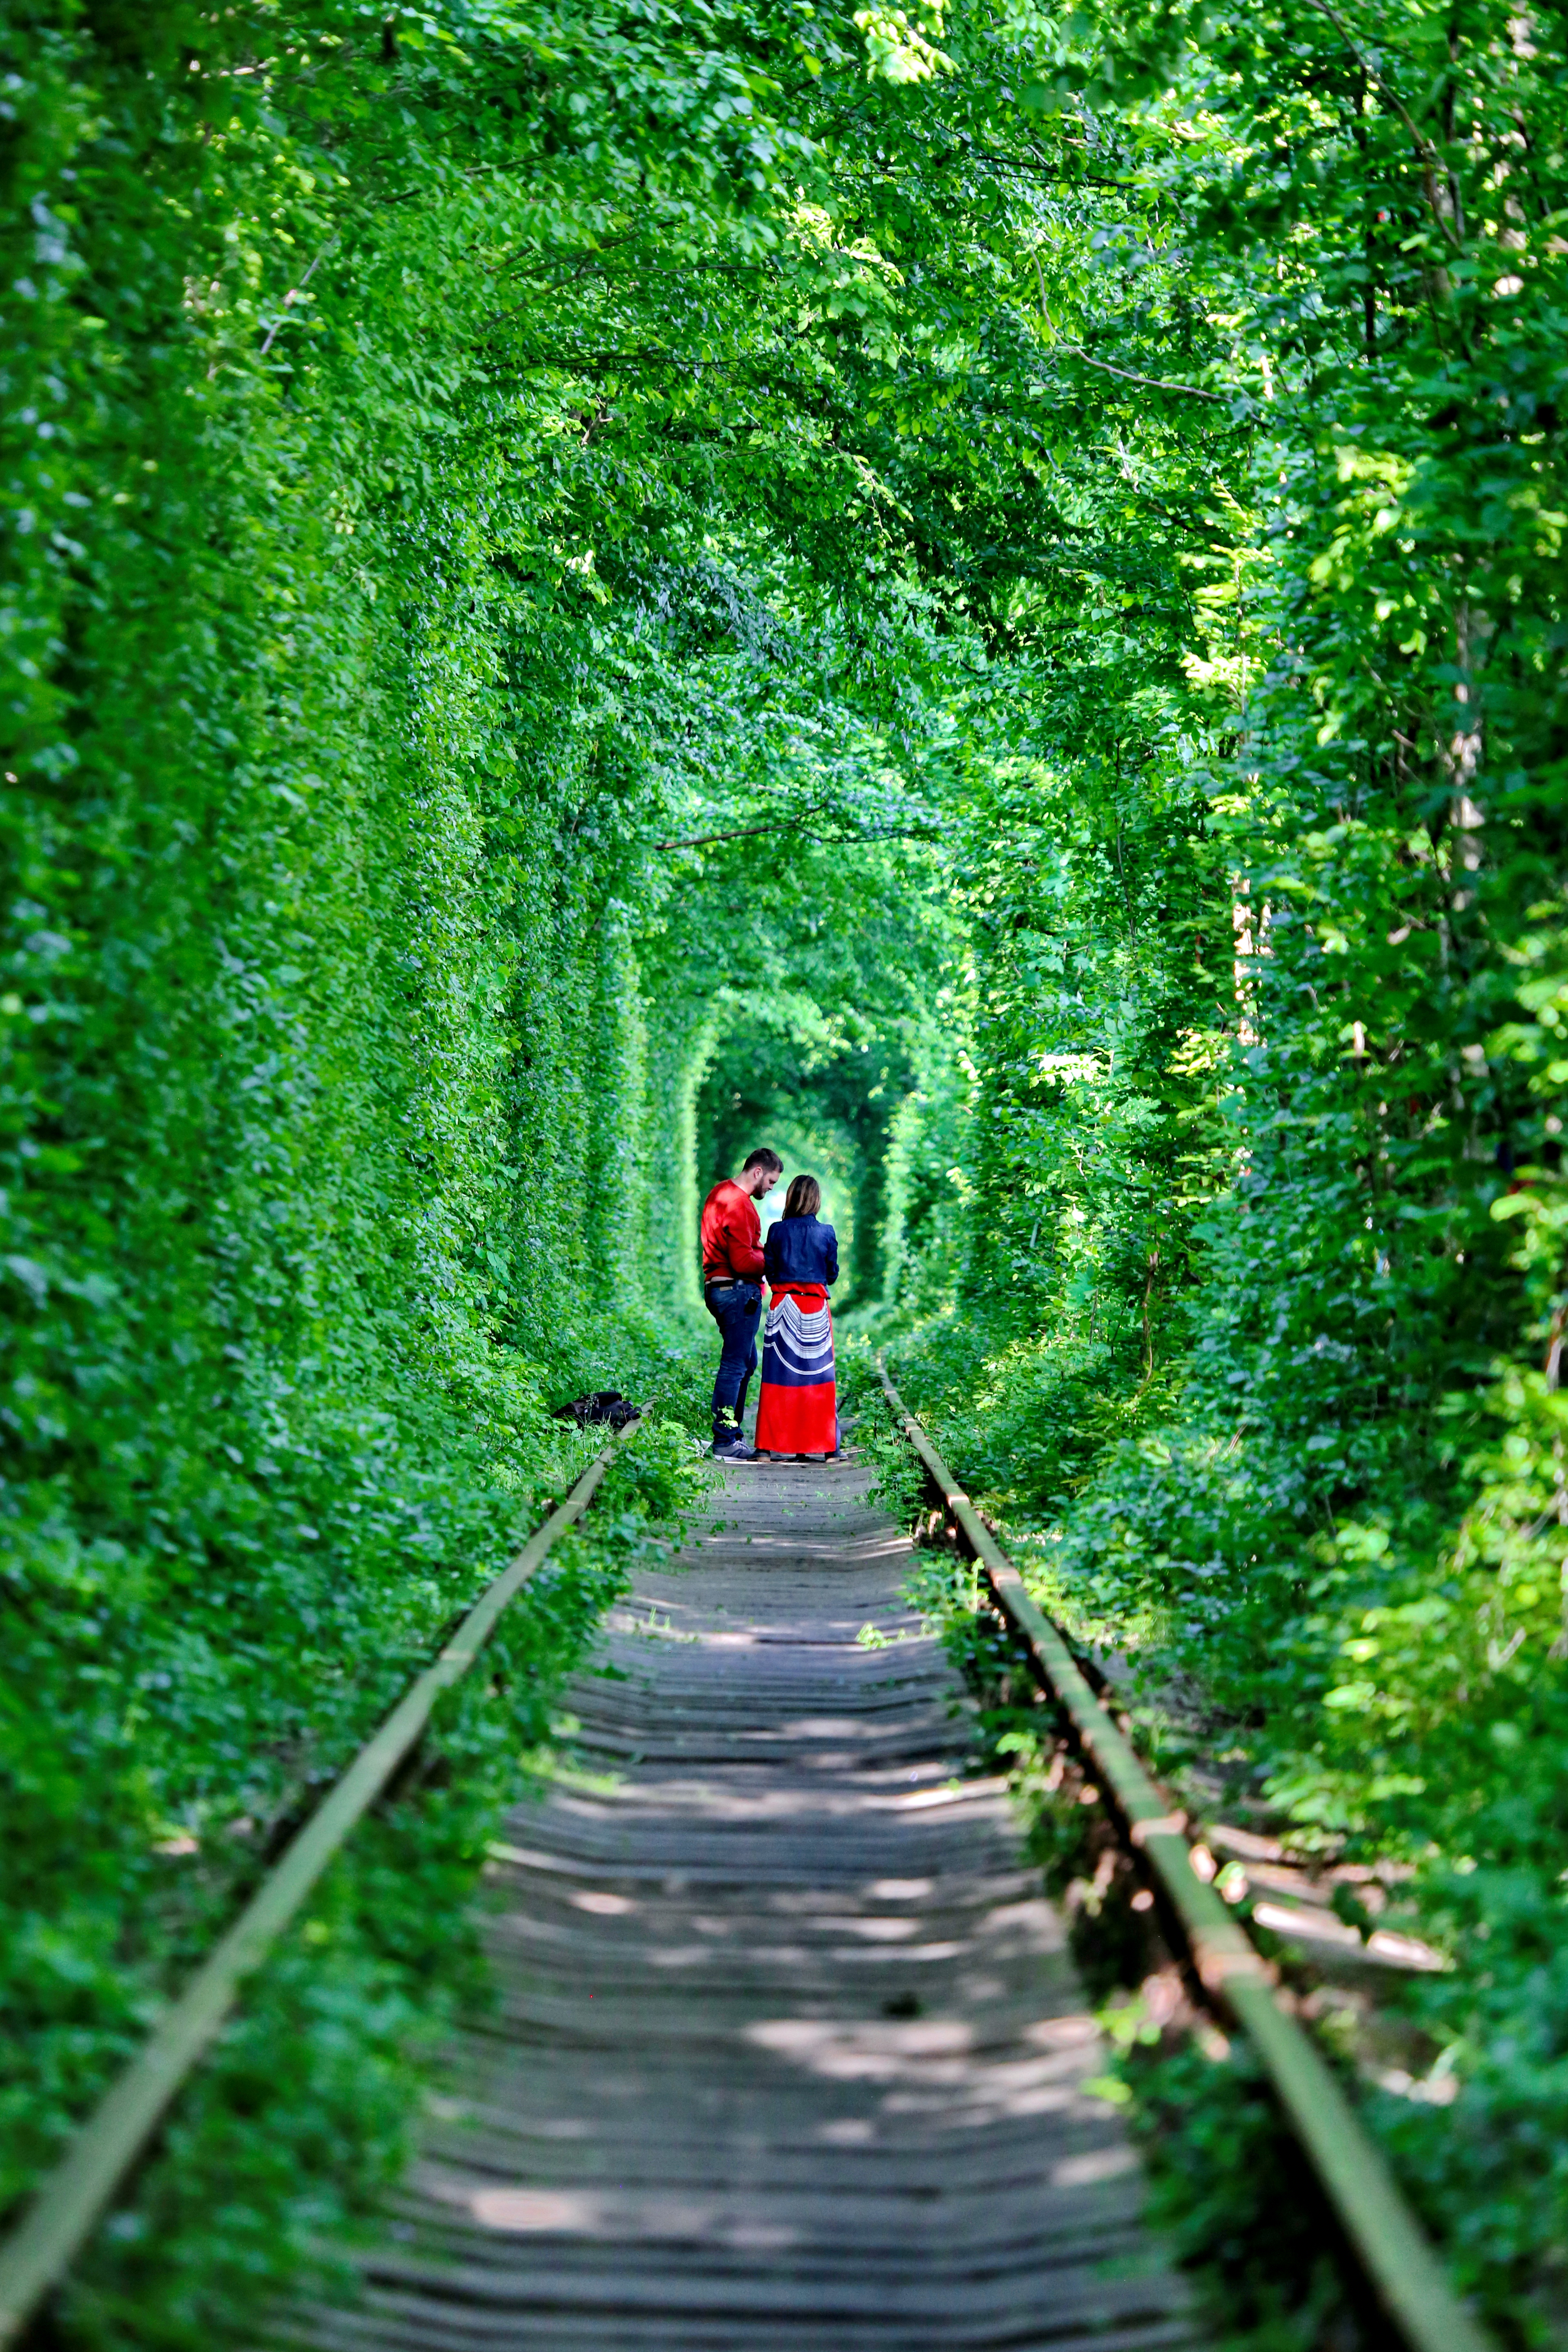 独一无二的景观——“爱情隧道”